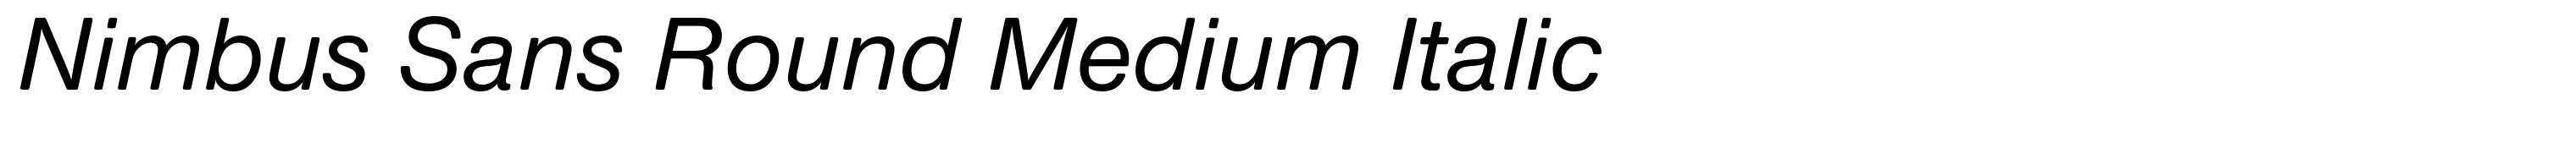 Nimbus Sans Round Medium Italic